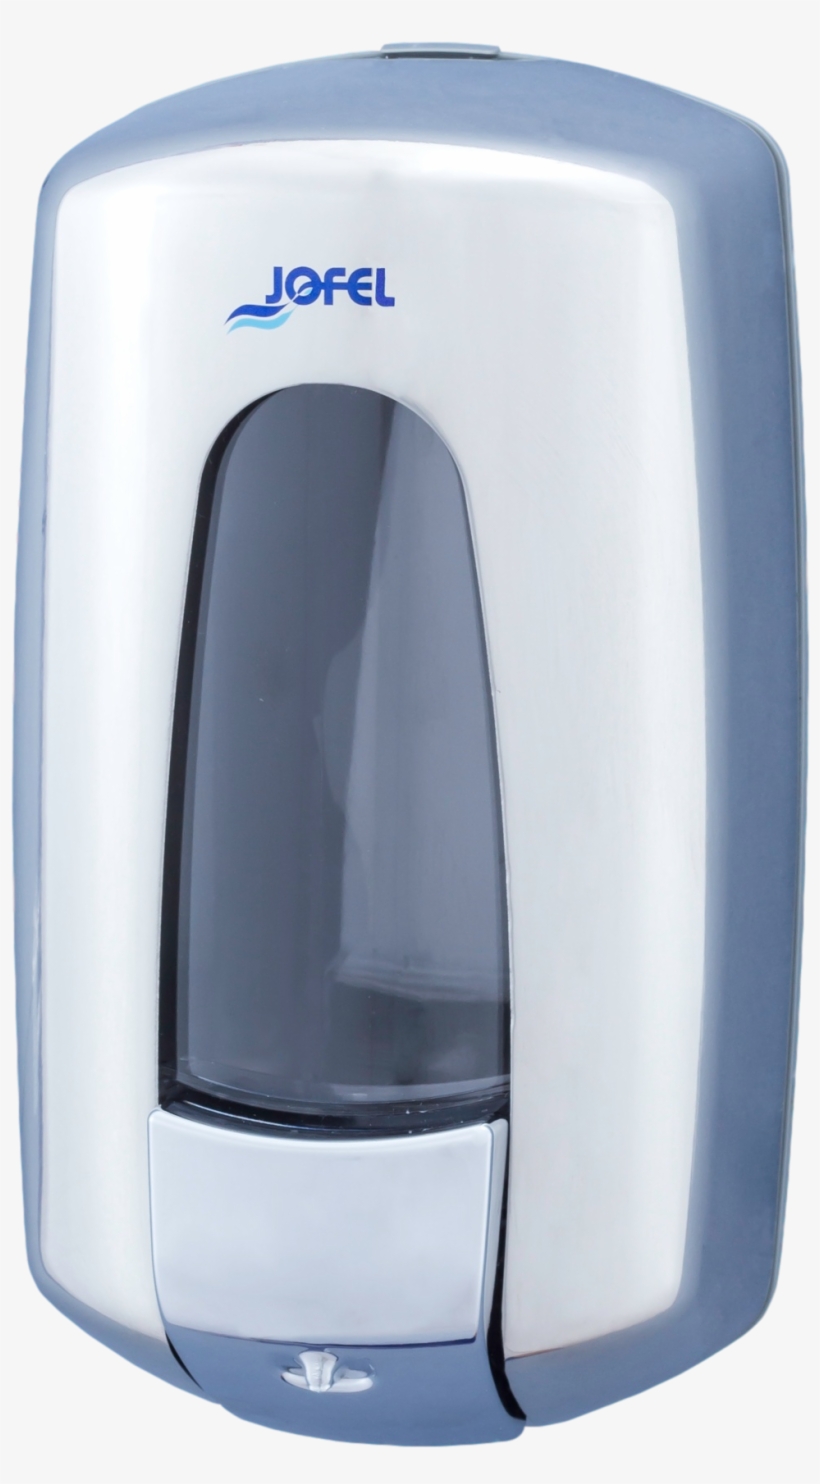 Imagen Png - Jofel Polished Stainless Steel Manual Soap Dispenser, transparent png #4069937